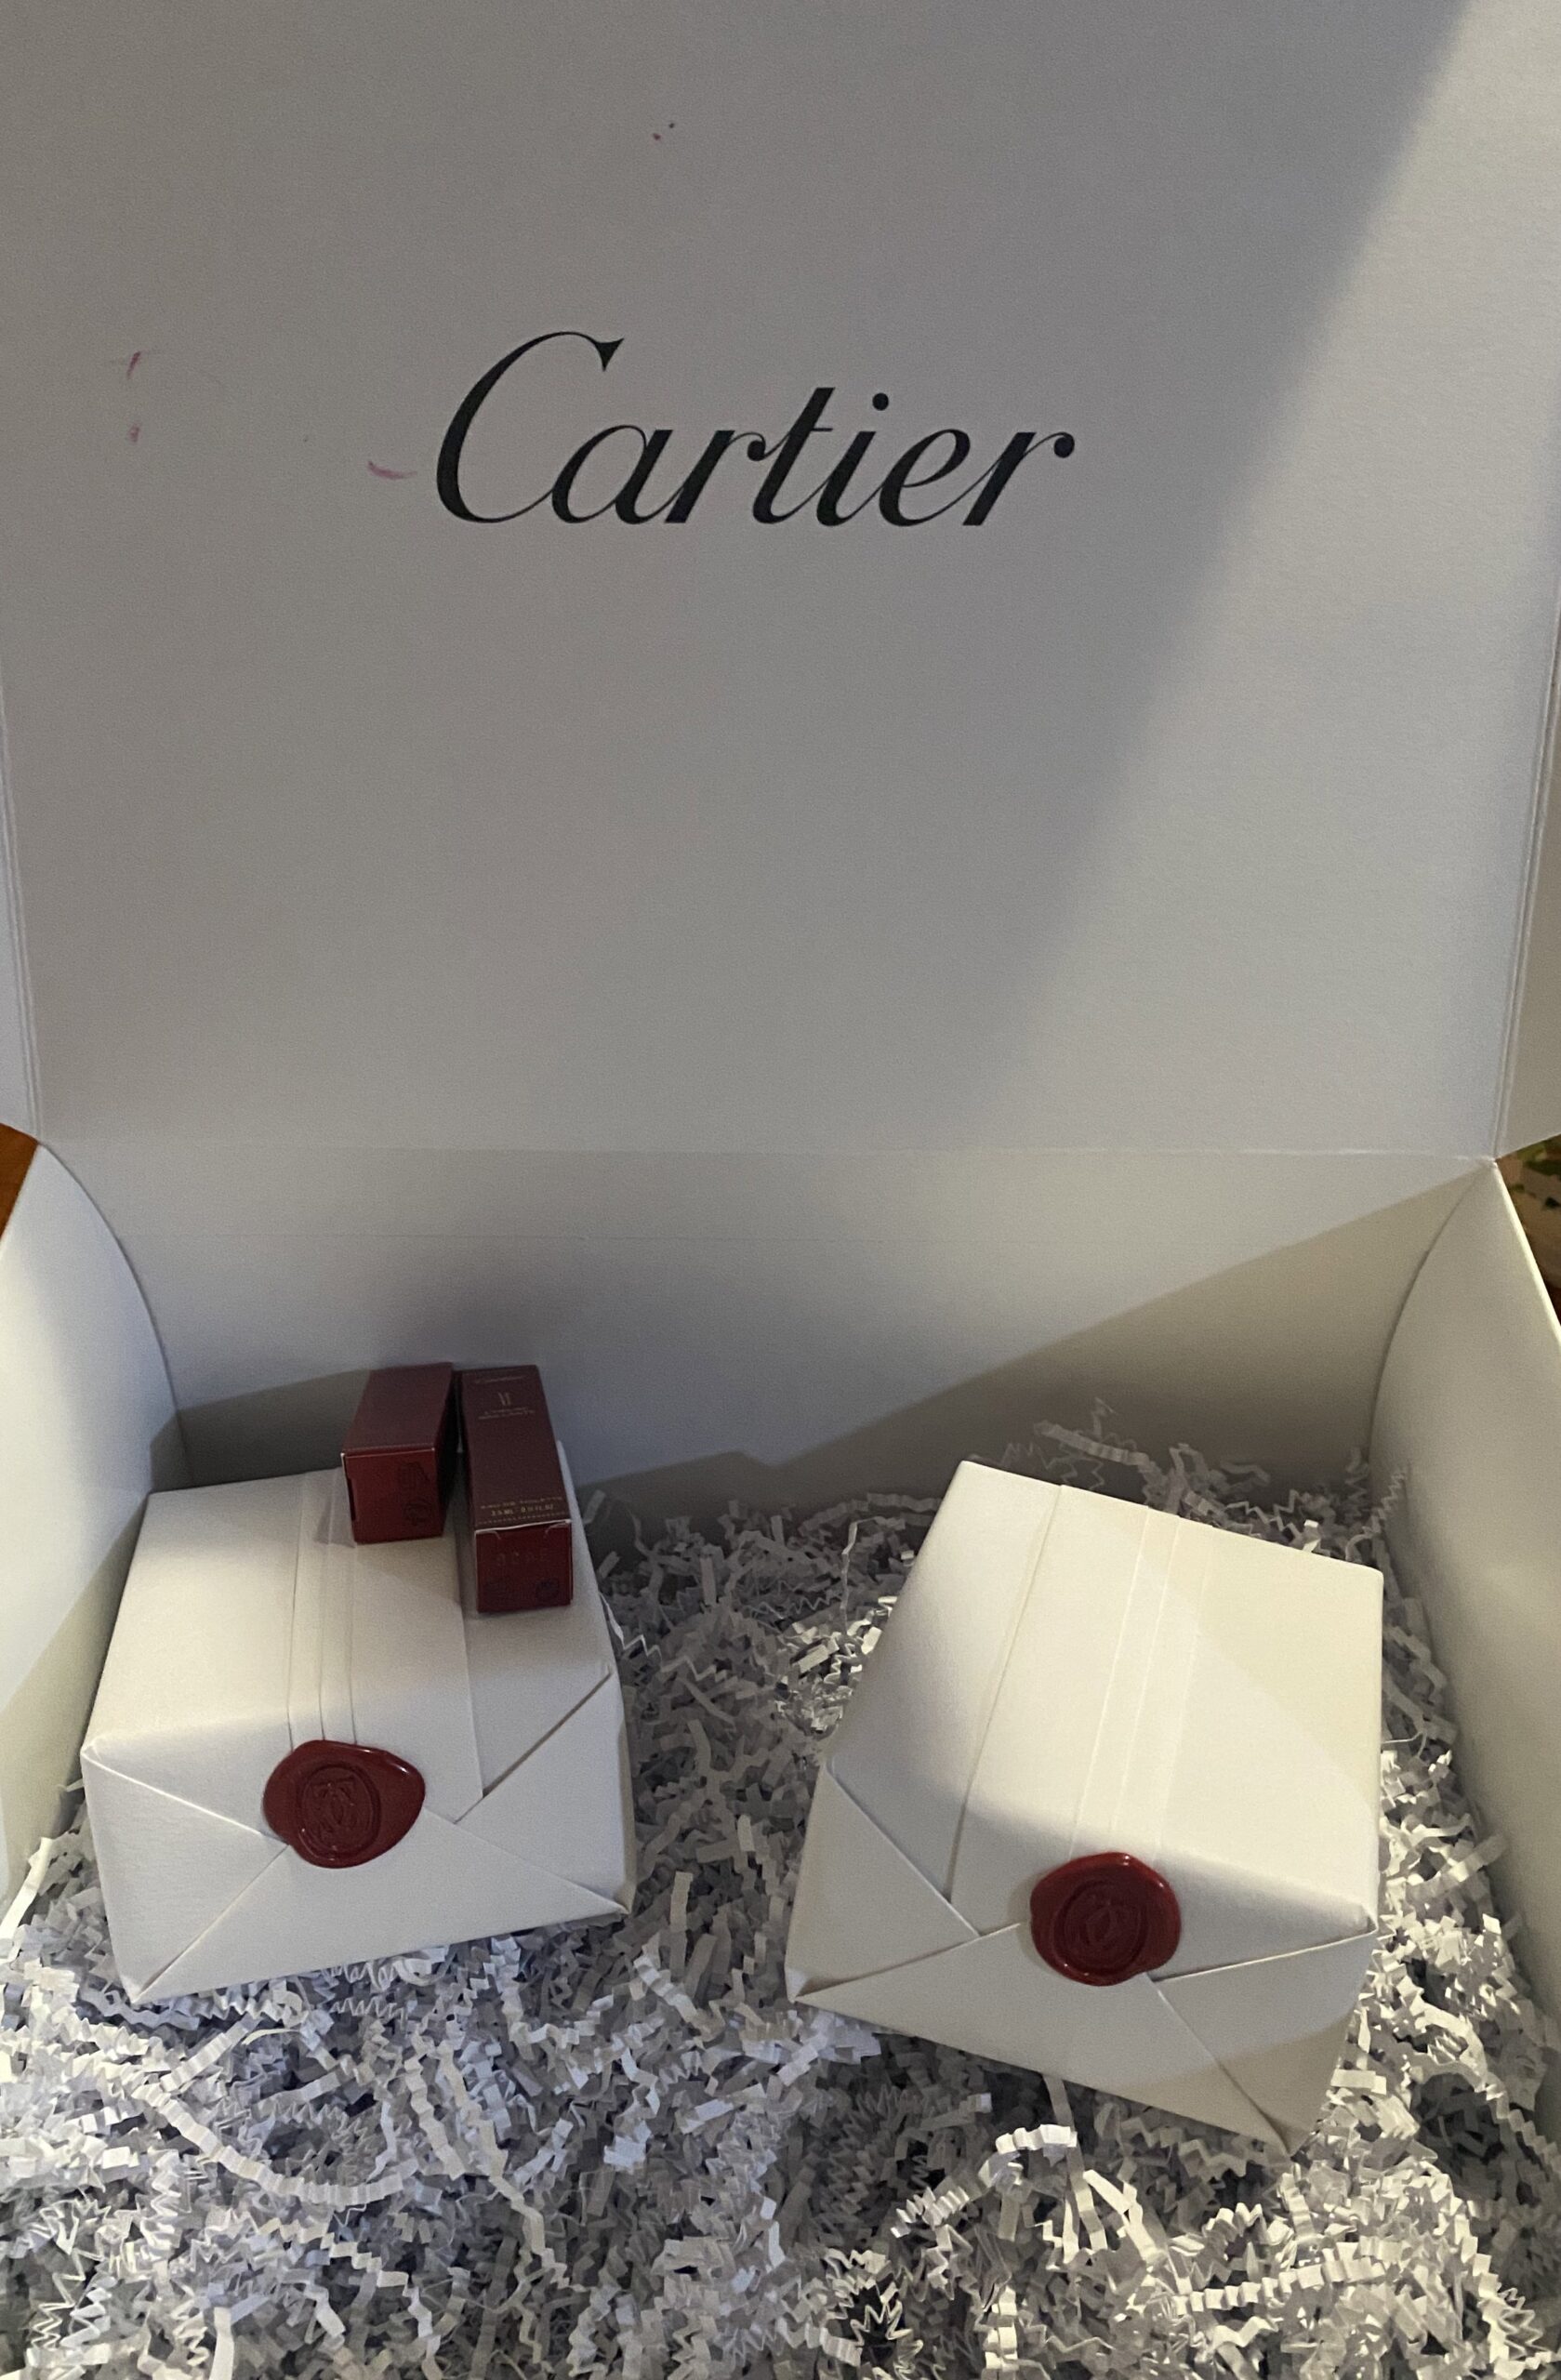 Cartier cumple y entrega aretes a joven que los compró en 237 pesos